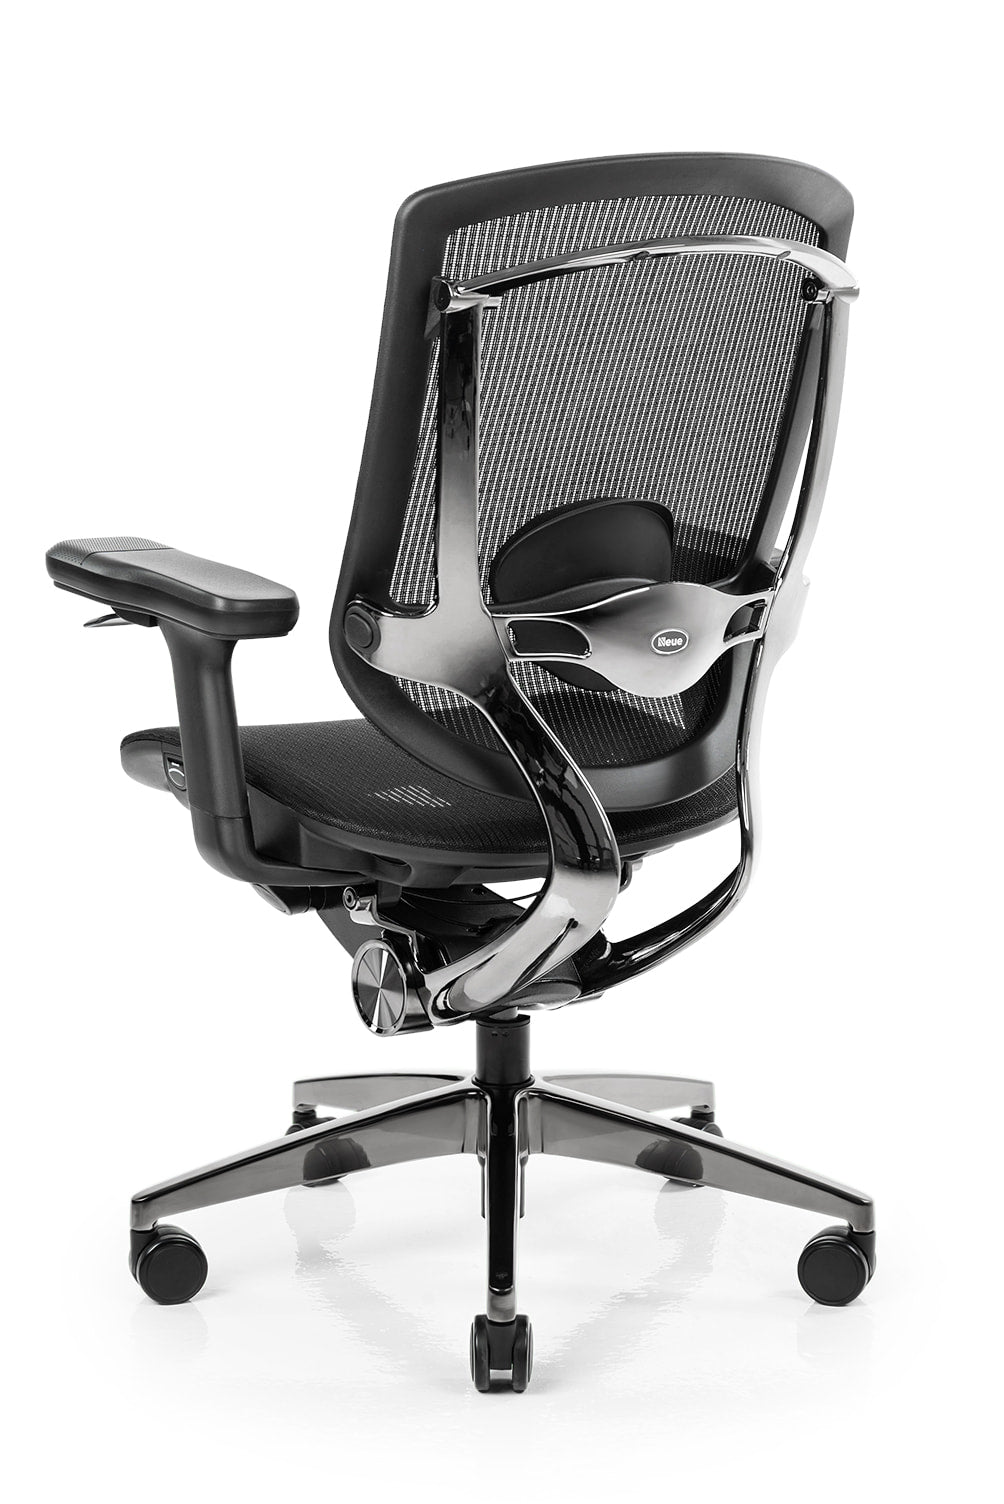 NeueChair  On test la chaise ergonomique de SecretLab ! Mieux qu'une chaise  gamer ? 